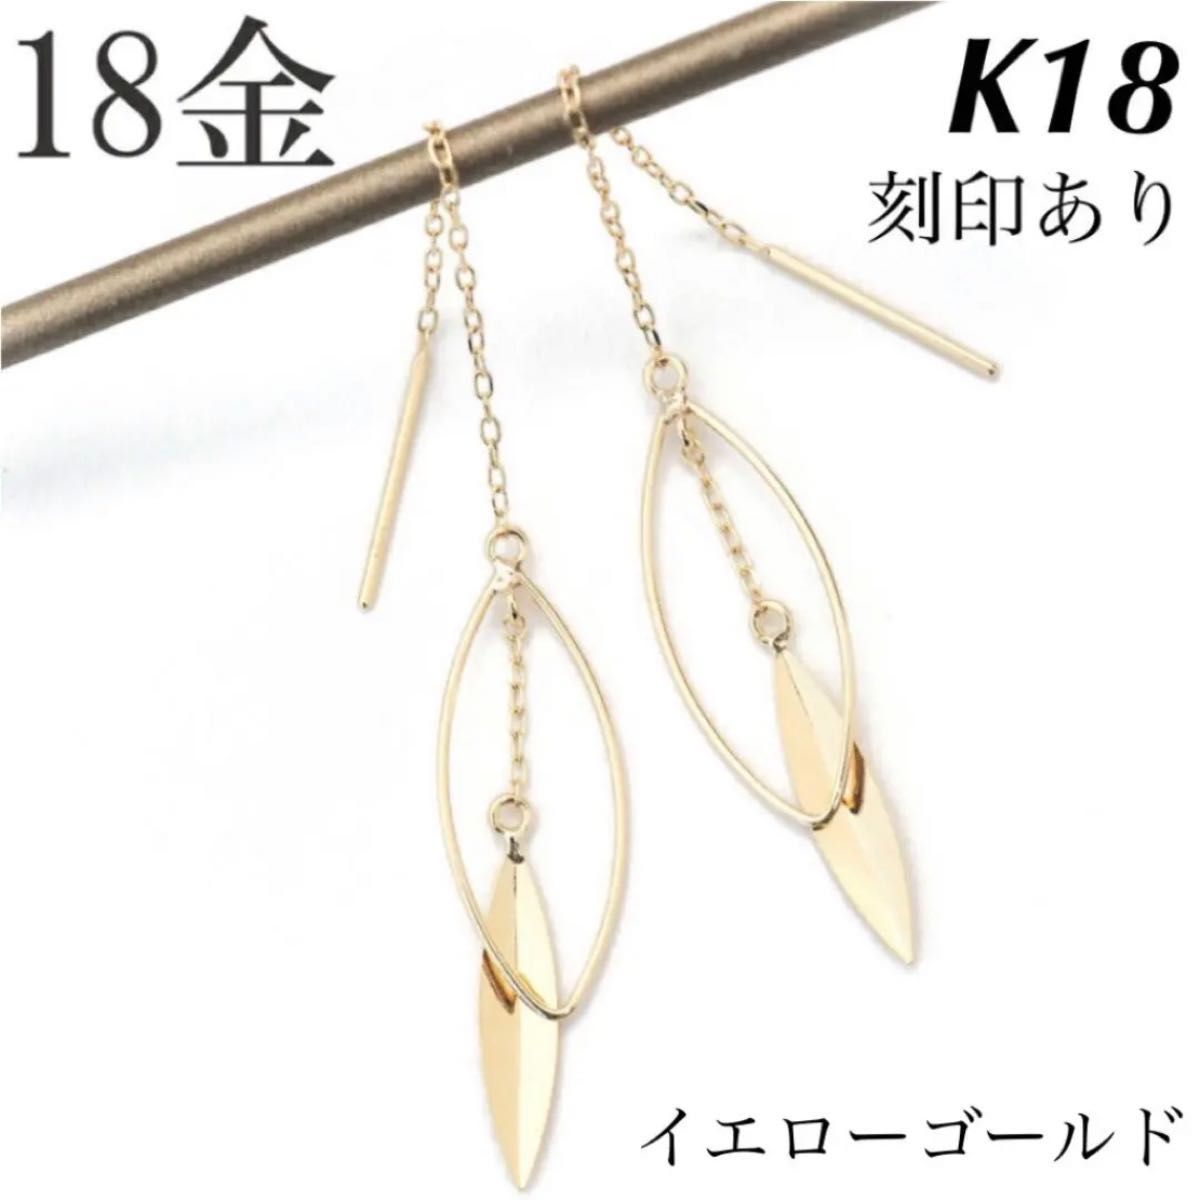 新品 K18 イエローゴールド ロングピアス アメリカンピアス 18金ピアス 刻印あり 上質 日本製 ペア